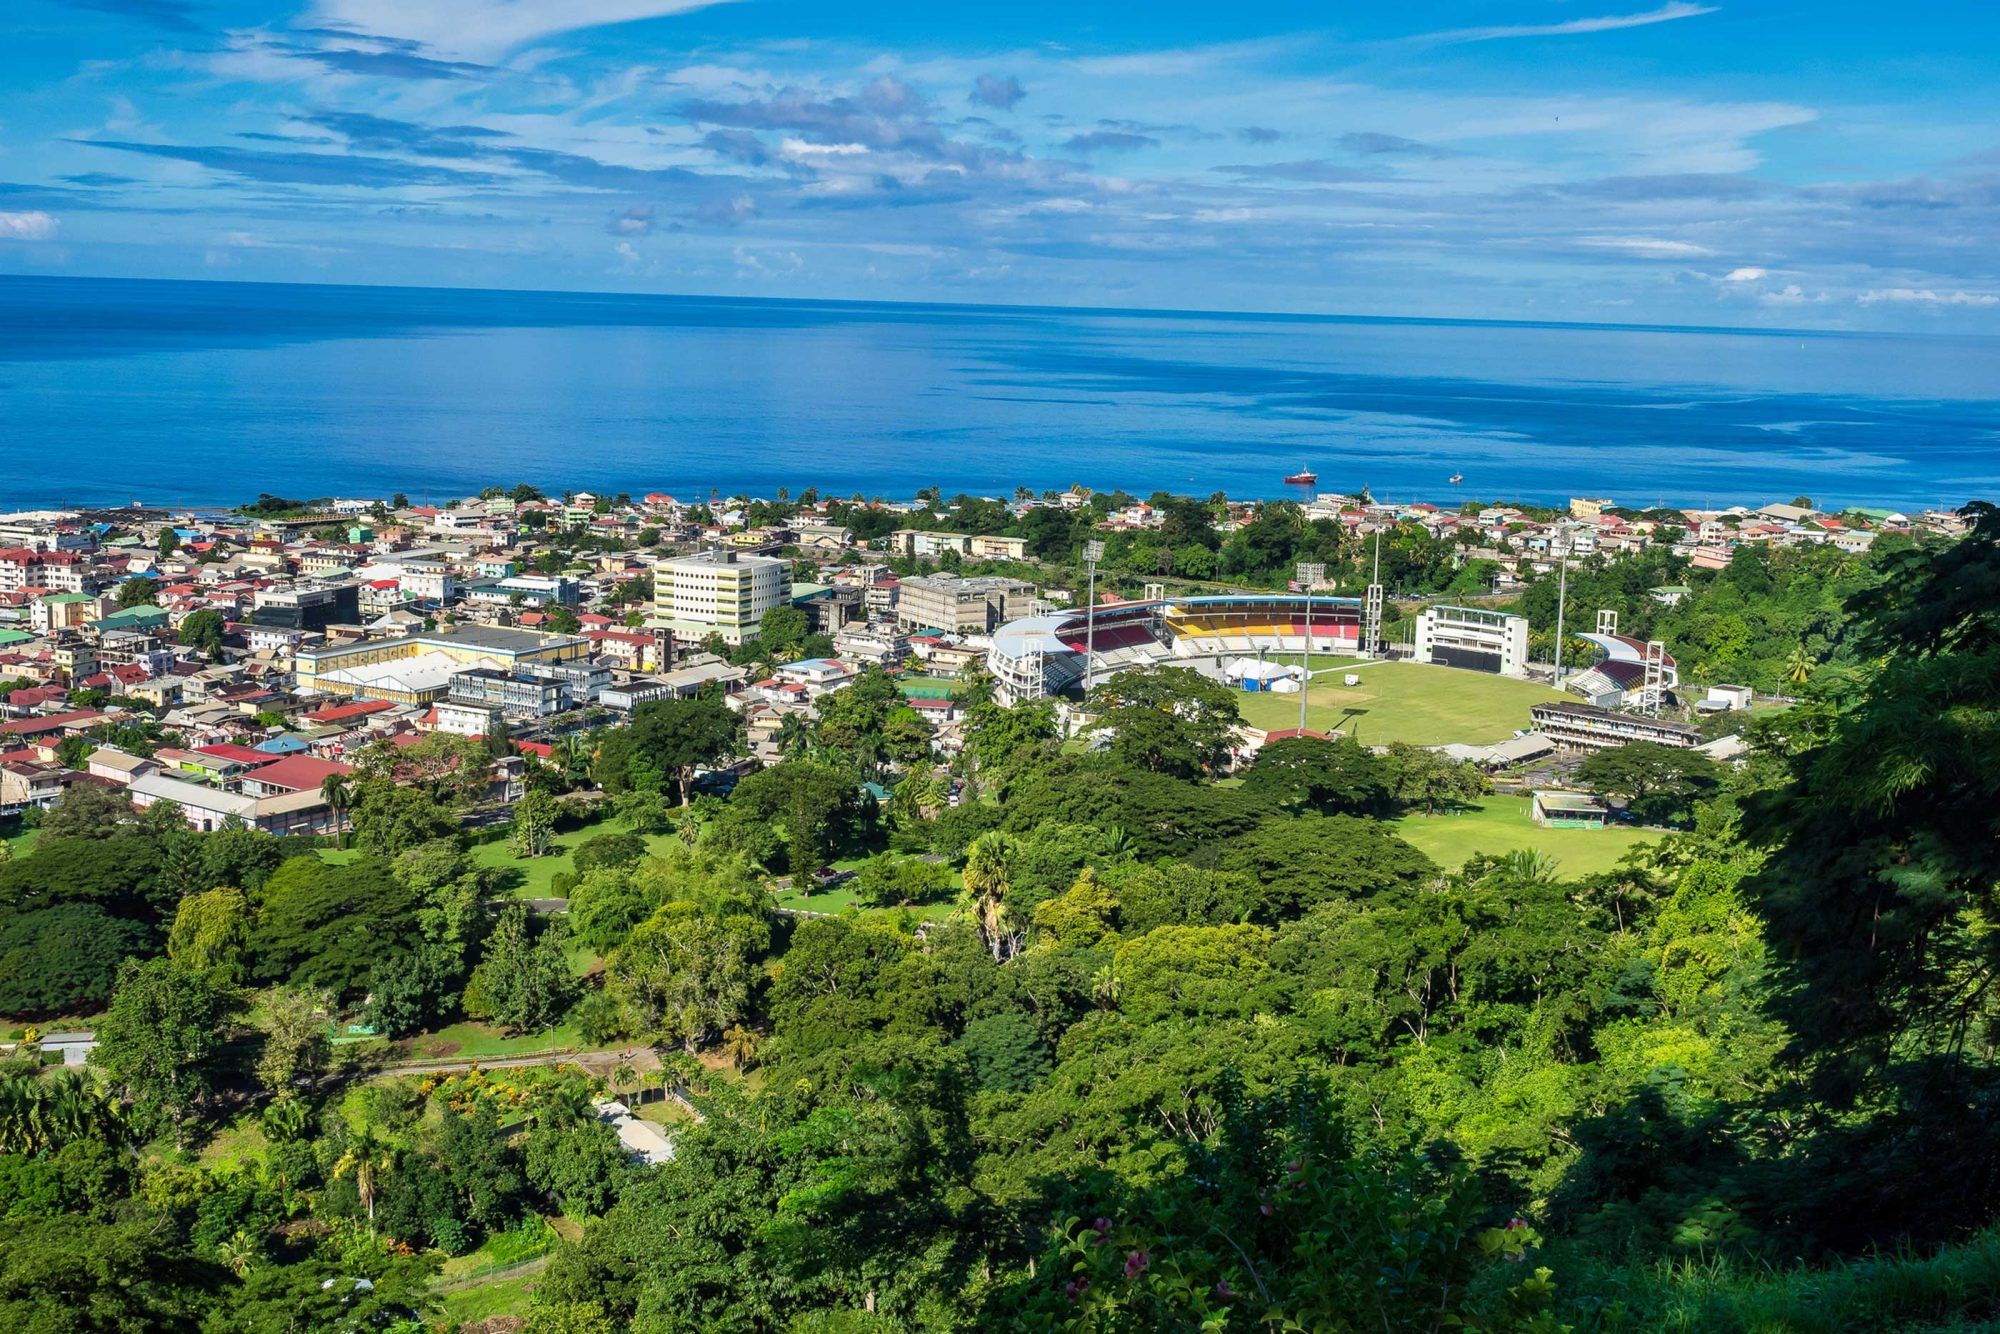 Naturskøn udsigt over Roseau by og hav, Dominica island. Set fra det lille bjerg Morne Bruce